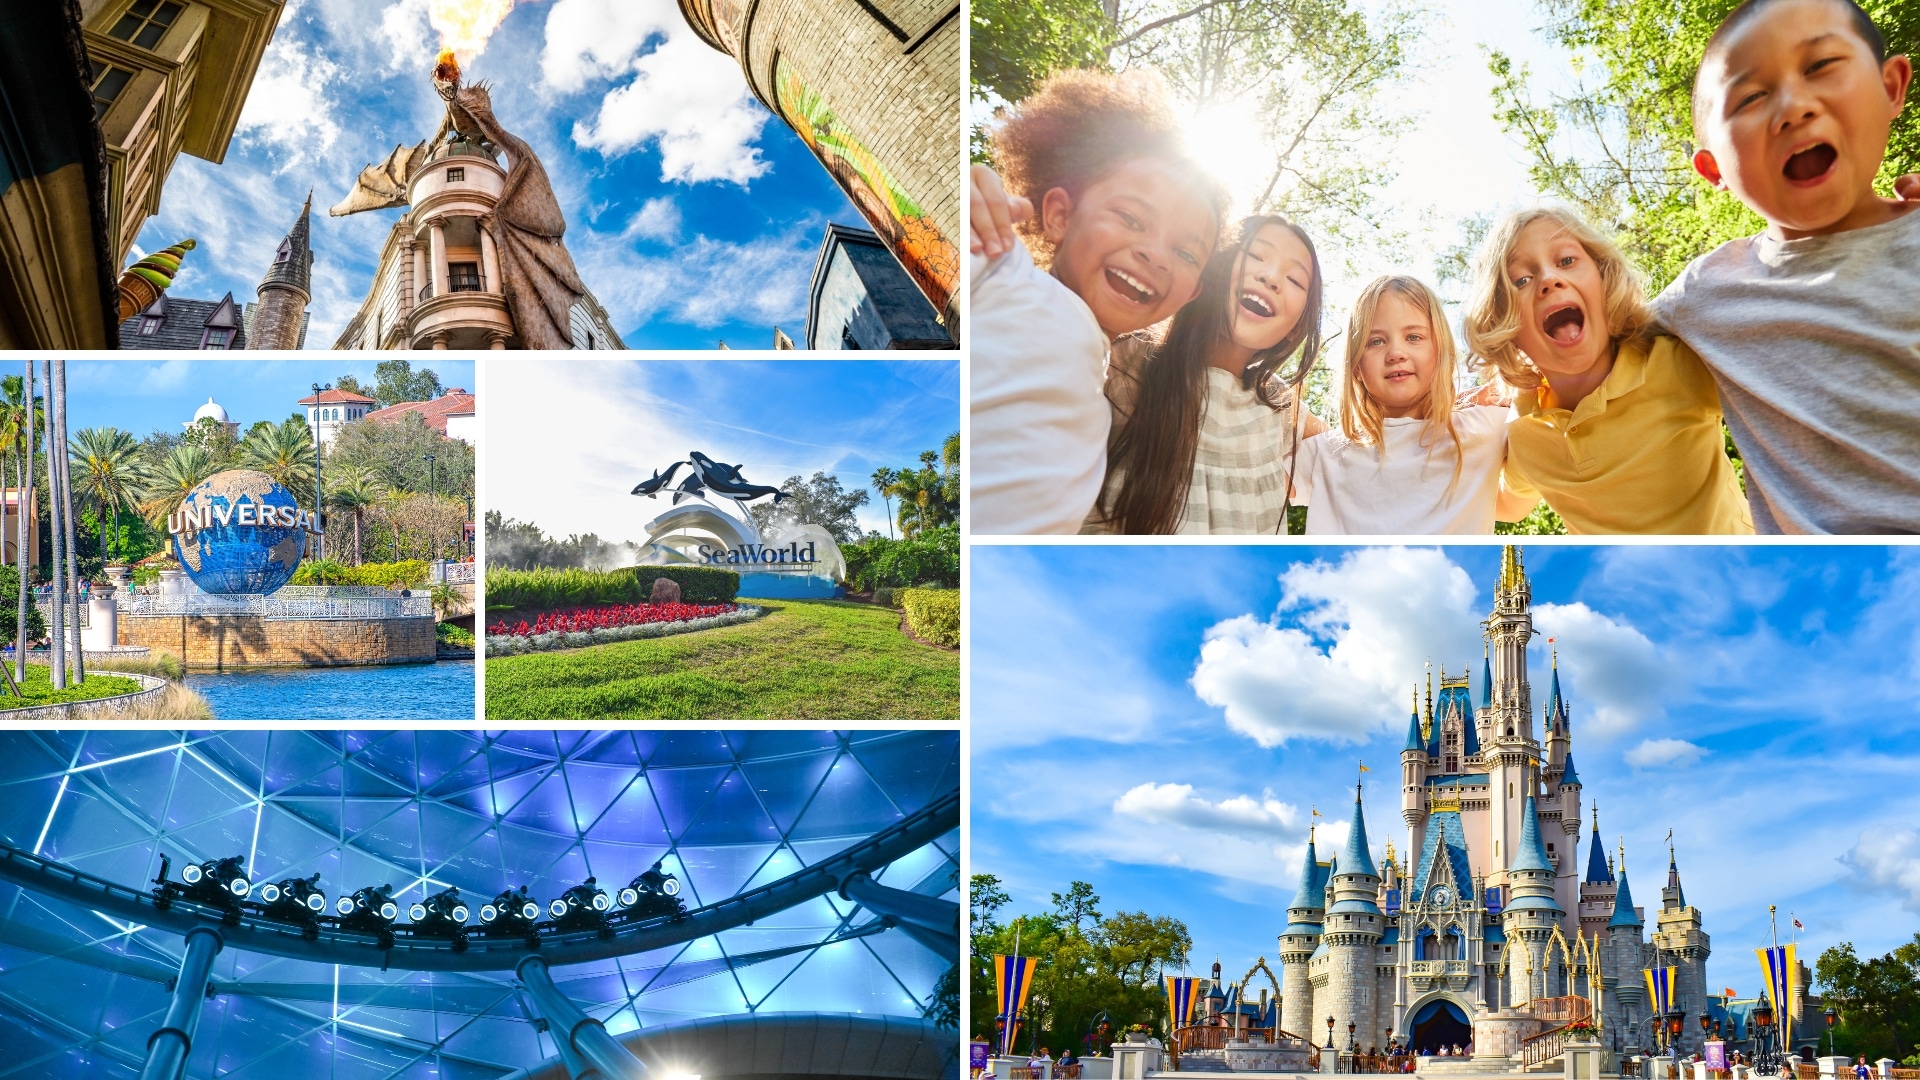 Orlando Florida - Theme Park Fun and More